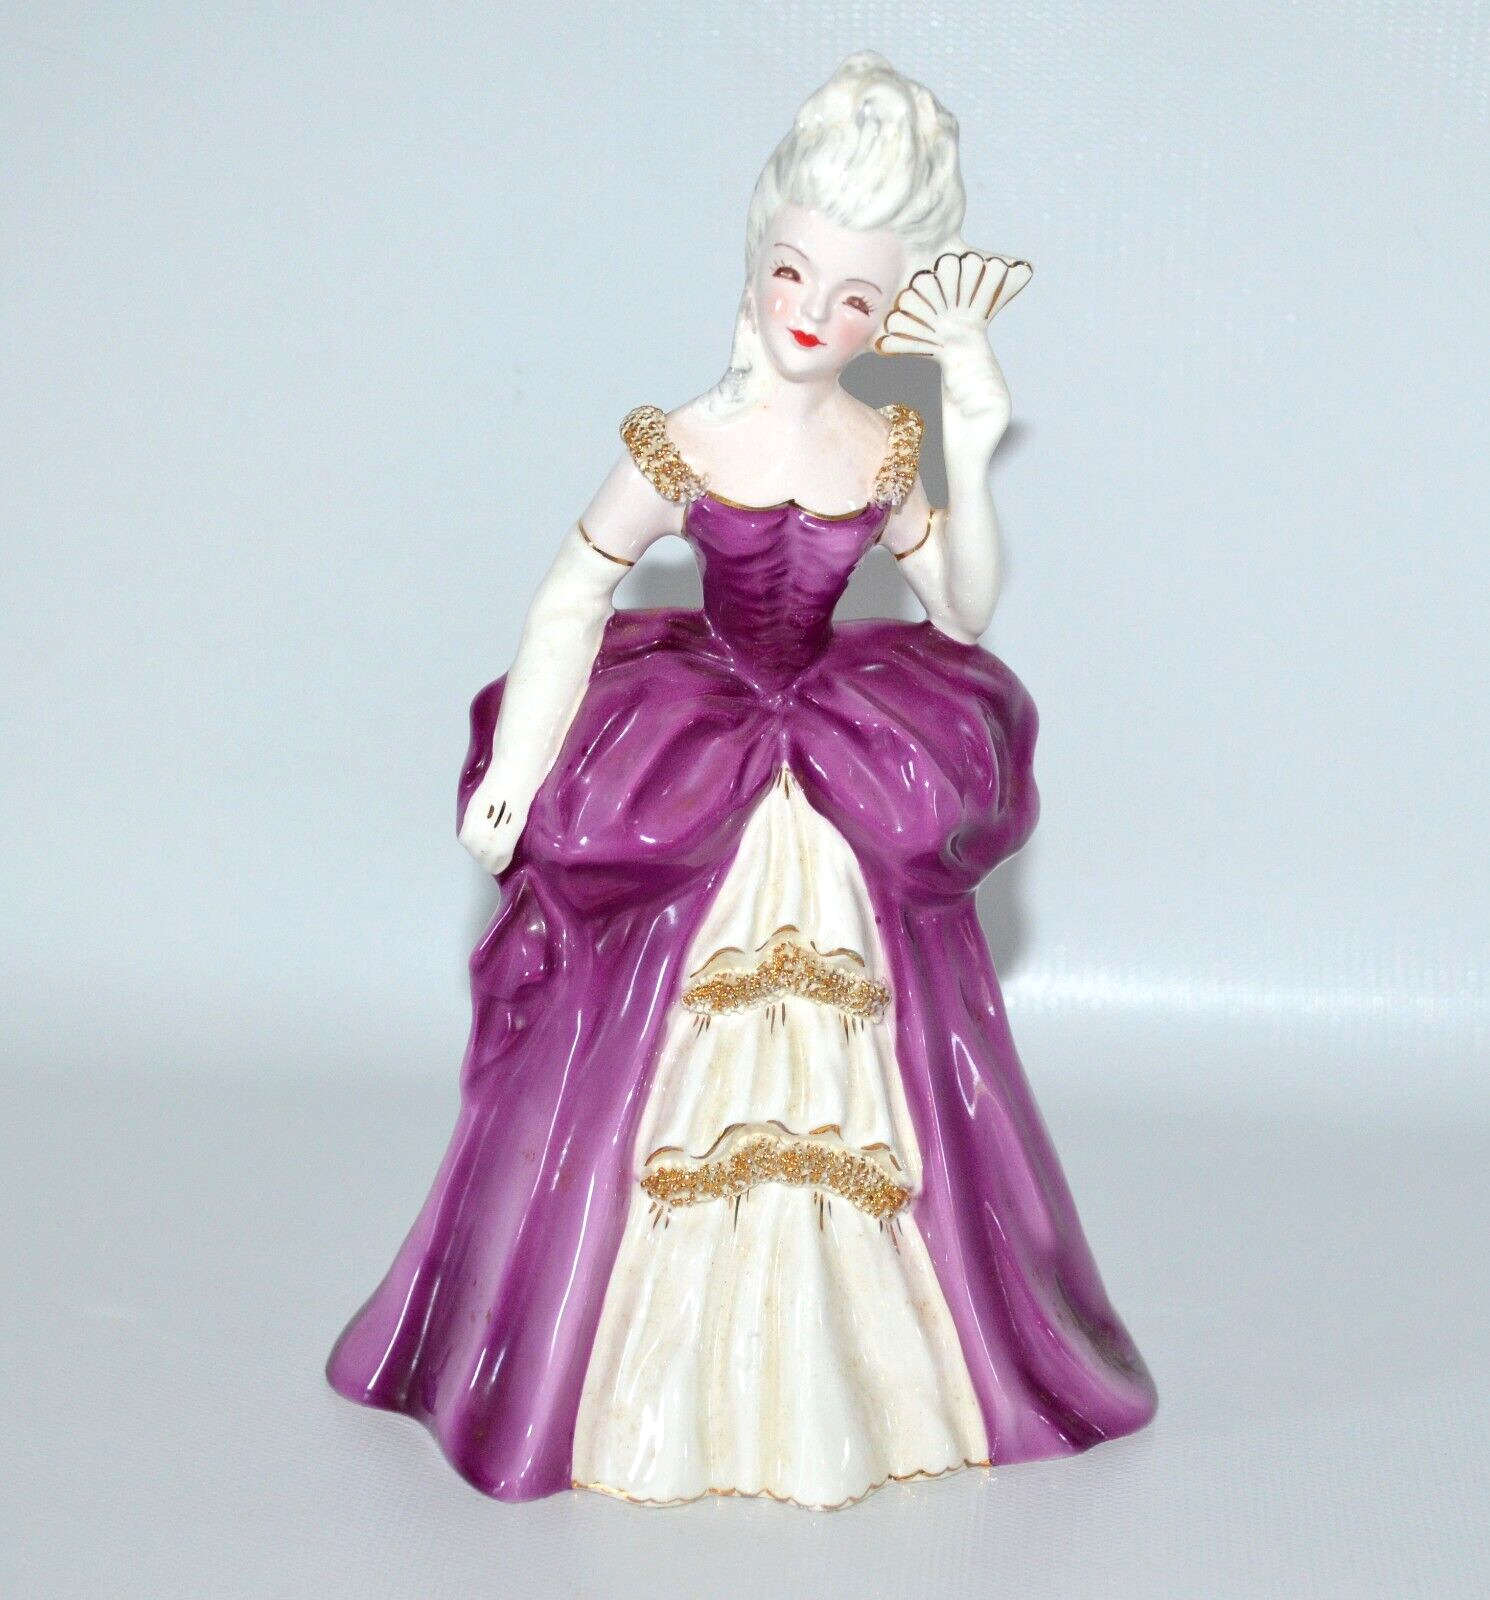 Florence Ceramics Patricia Lady Figurine Purple Plum Dress Pasadena California